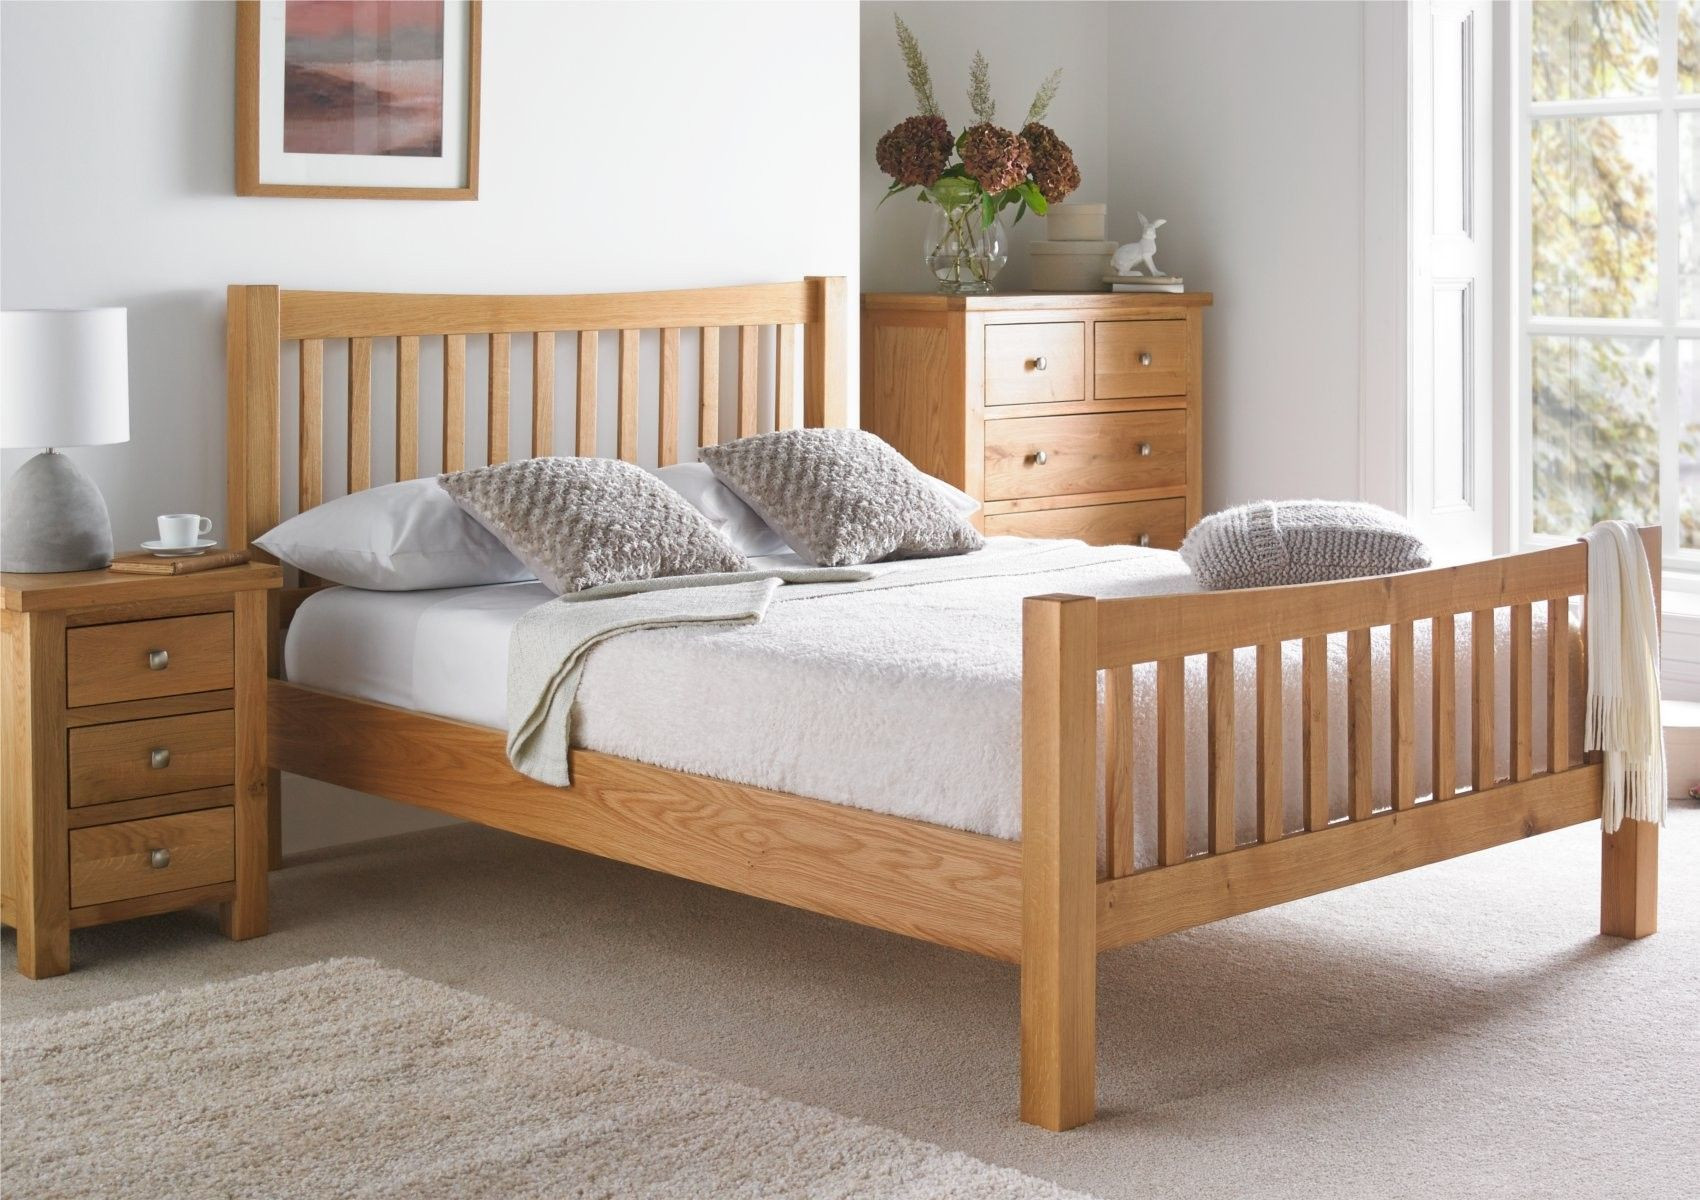 Light Oak Bedroom Furniture
 Dorset Oak Bed Frame Light wood Wooden Beds Beds